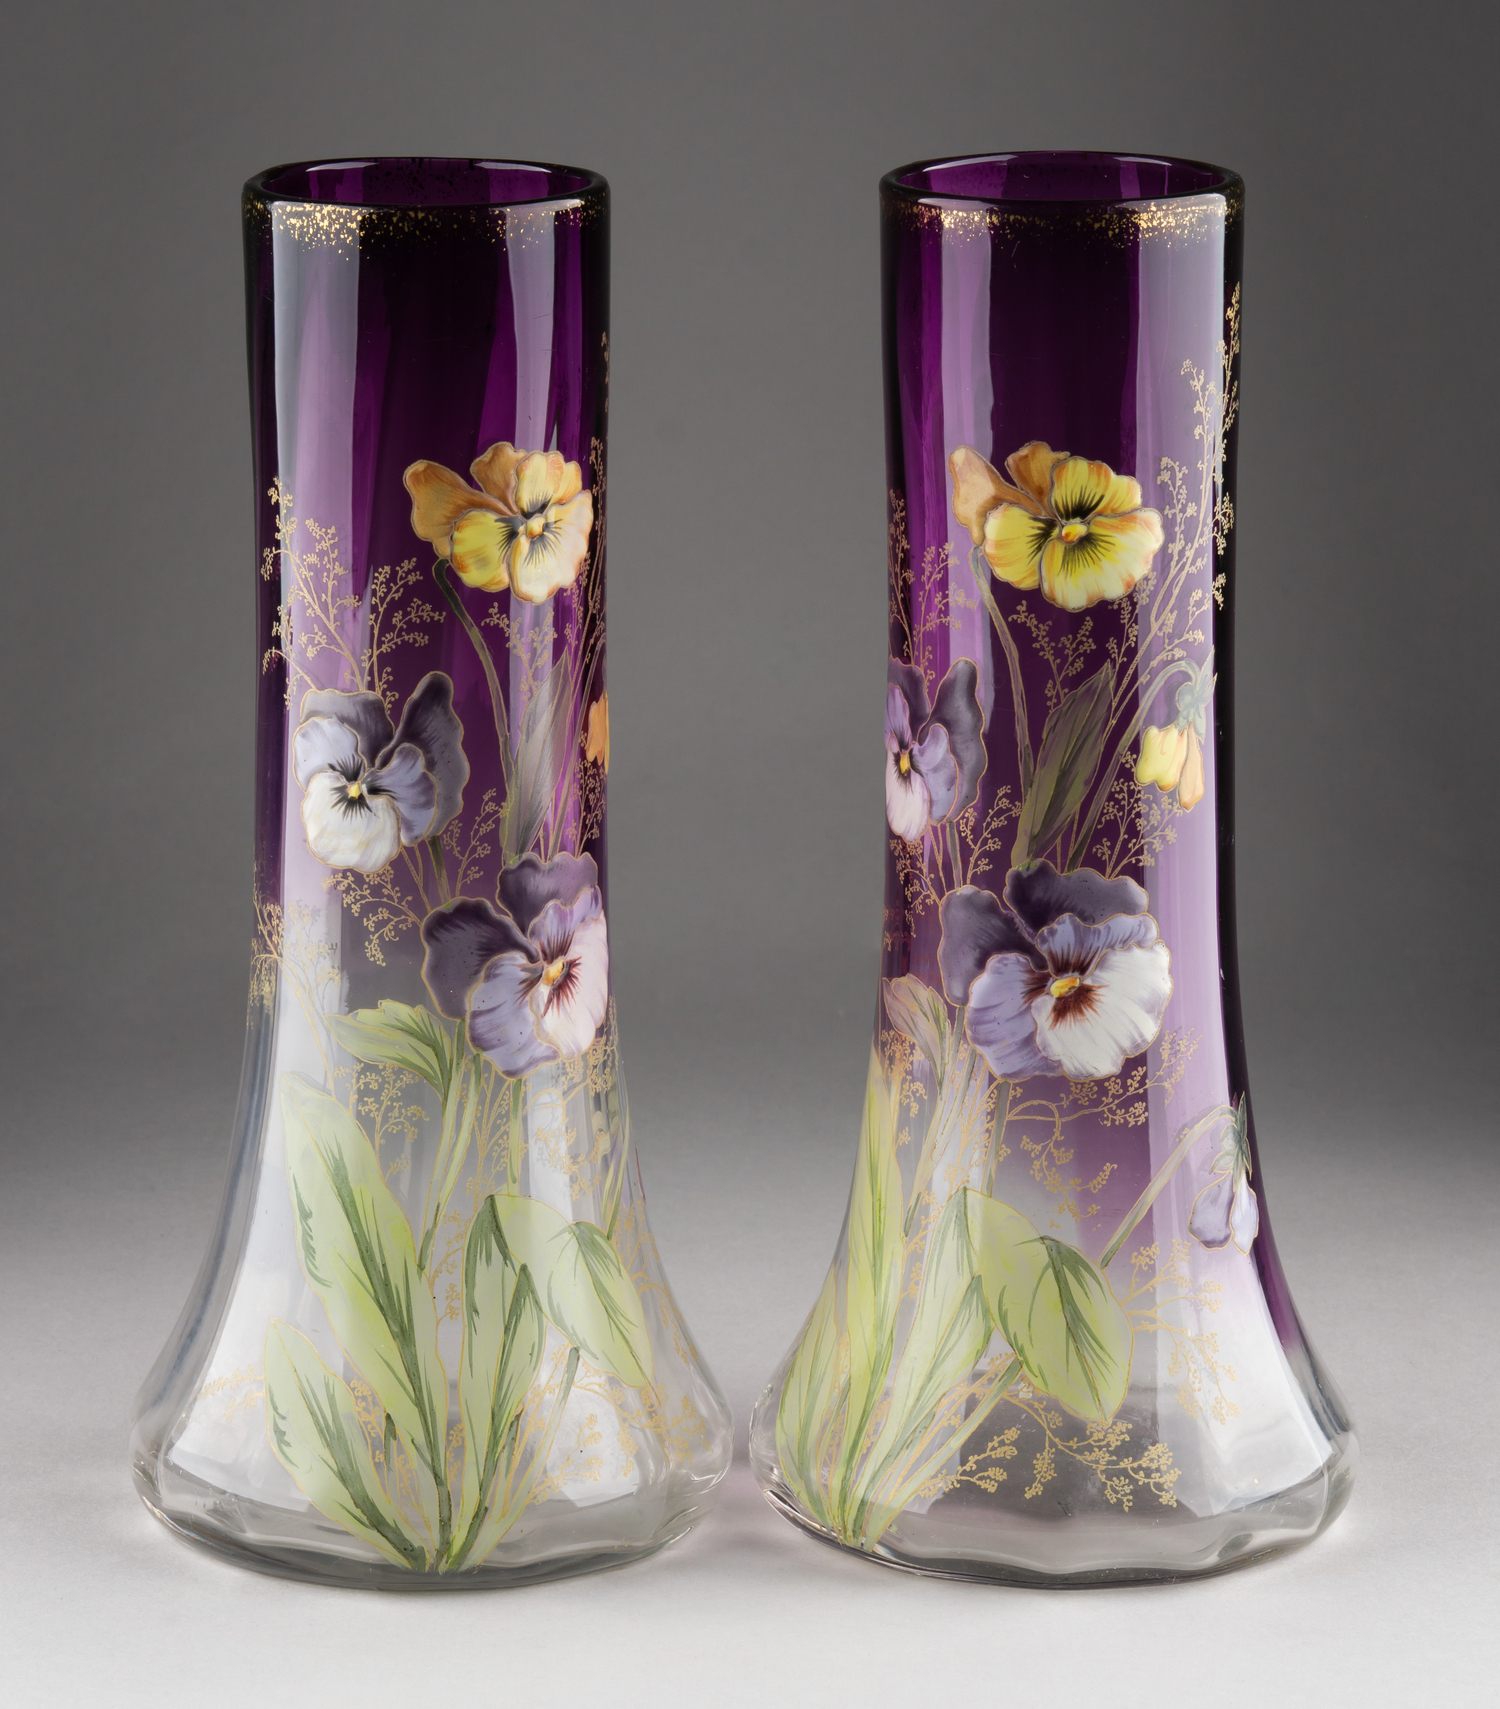 (Legras) Парные вазы «Анютины глазки».<br>Франция, фирма Legras, около 1900.